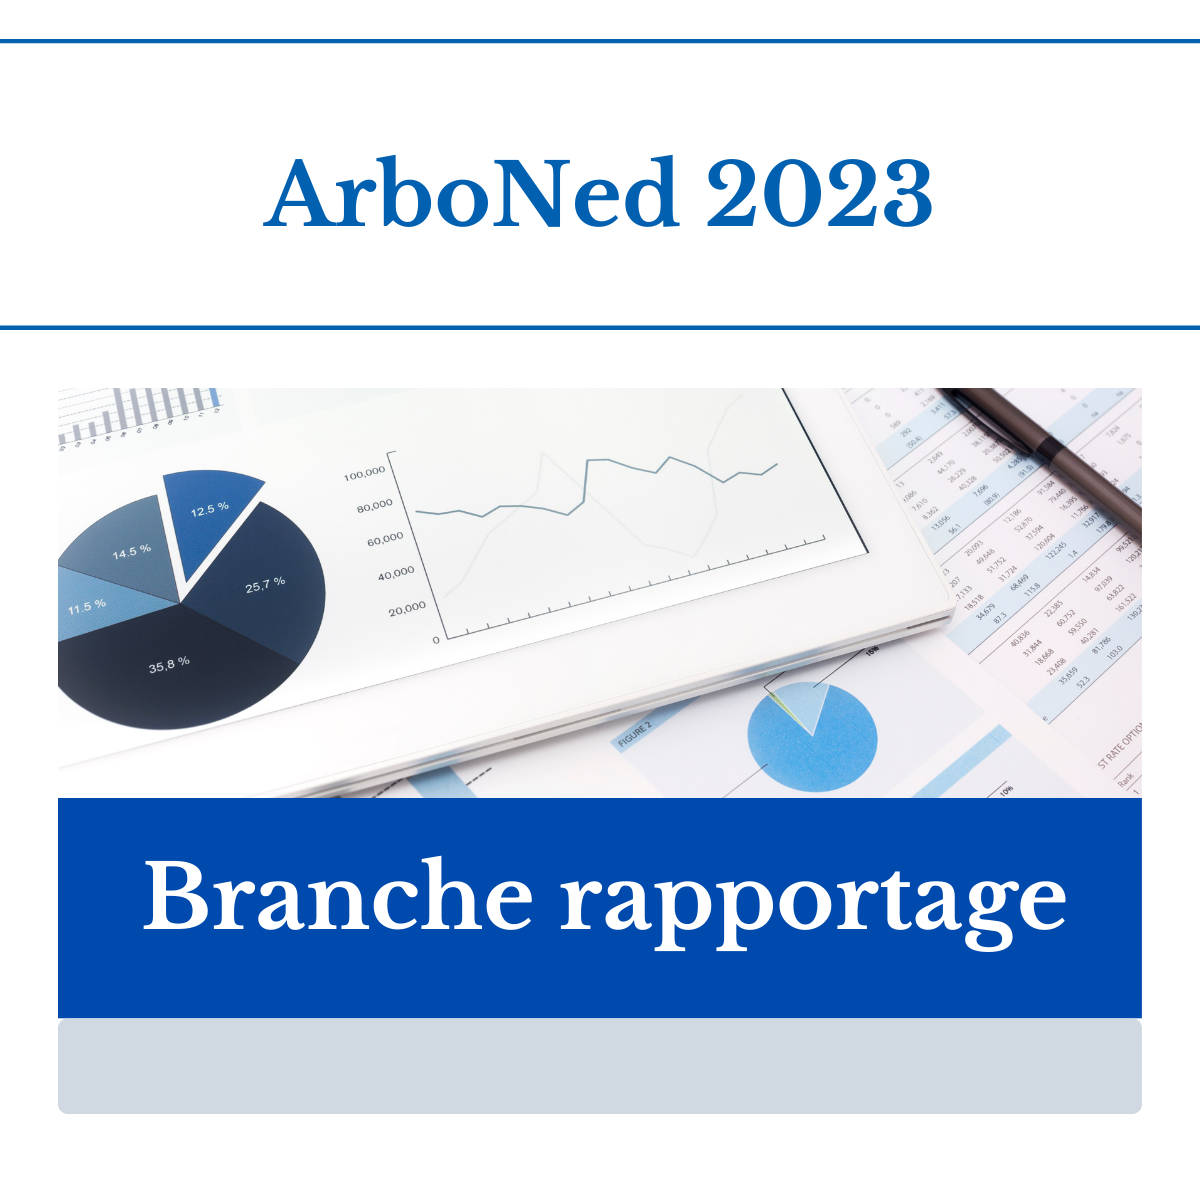 FHI-brancherapportage ArboNed 2023. Verzuimpercentage licht gedaald.